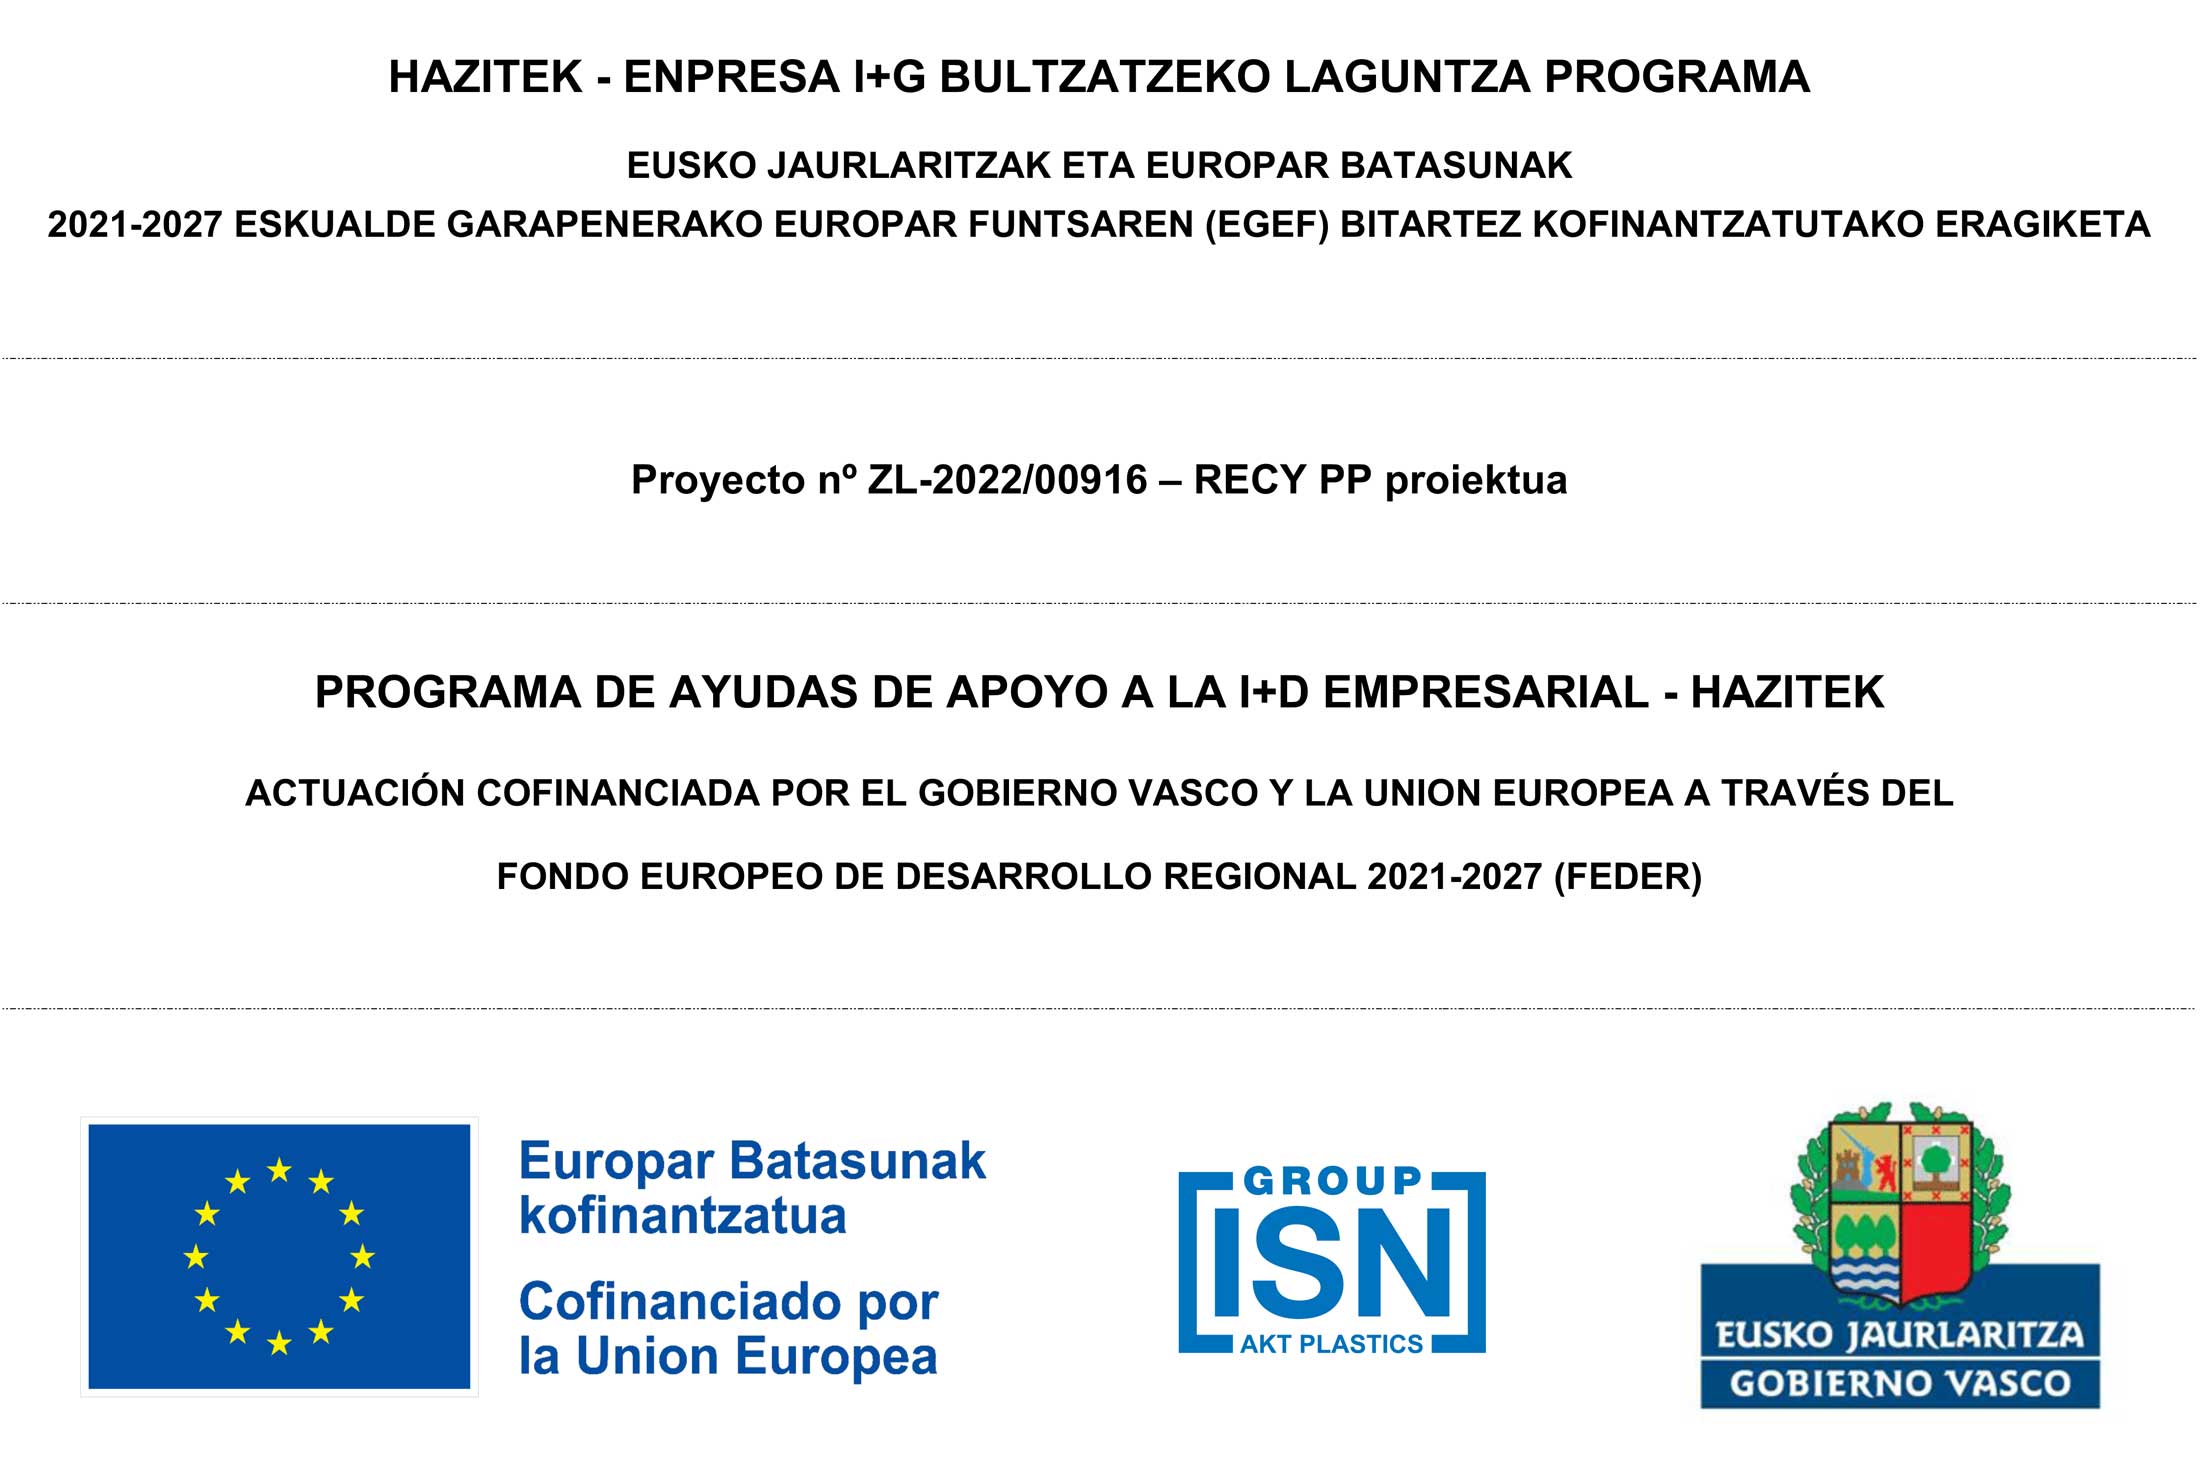 HAZITEK - ENPRESA I+G BULTZATZEKO LAGUNTZA PROGRAMA EUSKO JAURLARITZAK ETA EUROPAR BATASUNAK 2021-2027 ESKUALDE GARAPENERAKO EUROPAR FUNTSAREN (EGEF) BITARTEZ KOFINANTZATUTAKO ERAGIKETA Proyecto nº ZL-2022/00916 – RECY PP proiektua PROGRAMA DE AYUDAS DE APOYO A LA I+D EMPRESARIAL - HAZITEK ACTUACIÓN COFINANCIADA POR EL GOBIERNO VASCO Y LA UNION EUROPEA A TRAVÉS DEL FONDO EUROPEO DE DESARROLLO REGIONAL 2021-2027 (FEDER)